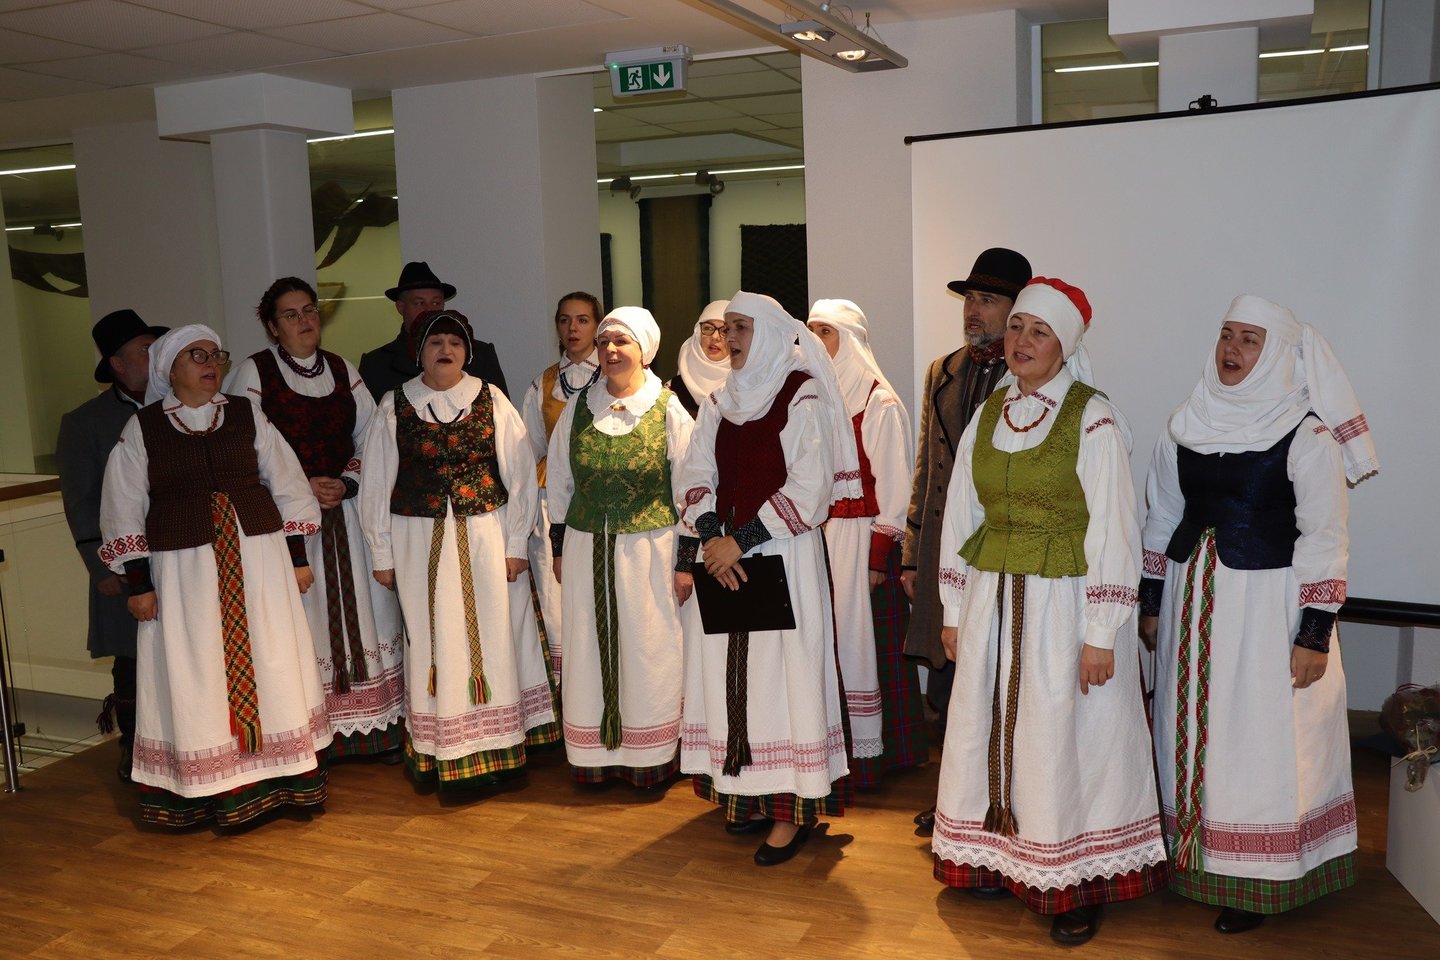 Muziejus įgyvendino tęstinį projektą „Sugrįžtanti dainomis“, skirtą žymiausios Ignalinos krašto pateikėjos Kristinos Skrebutėnienės tautosakos palikimo įprasminimui.